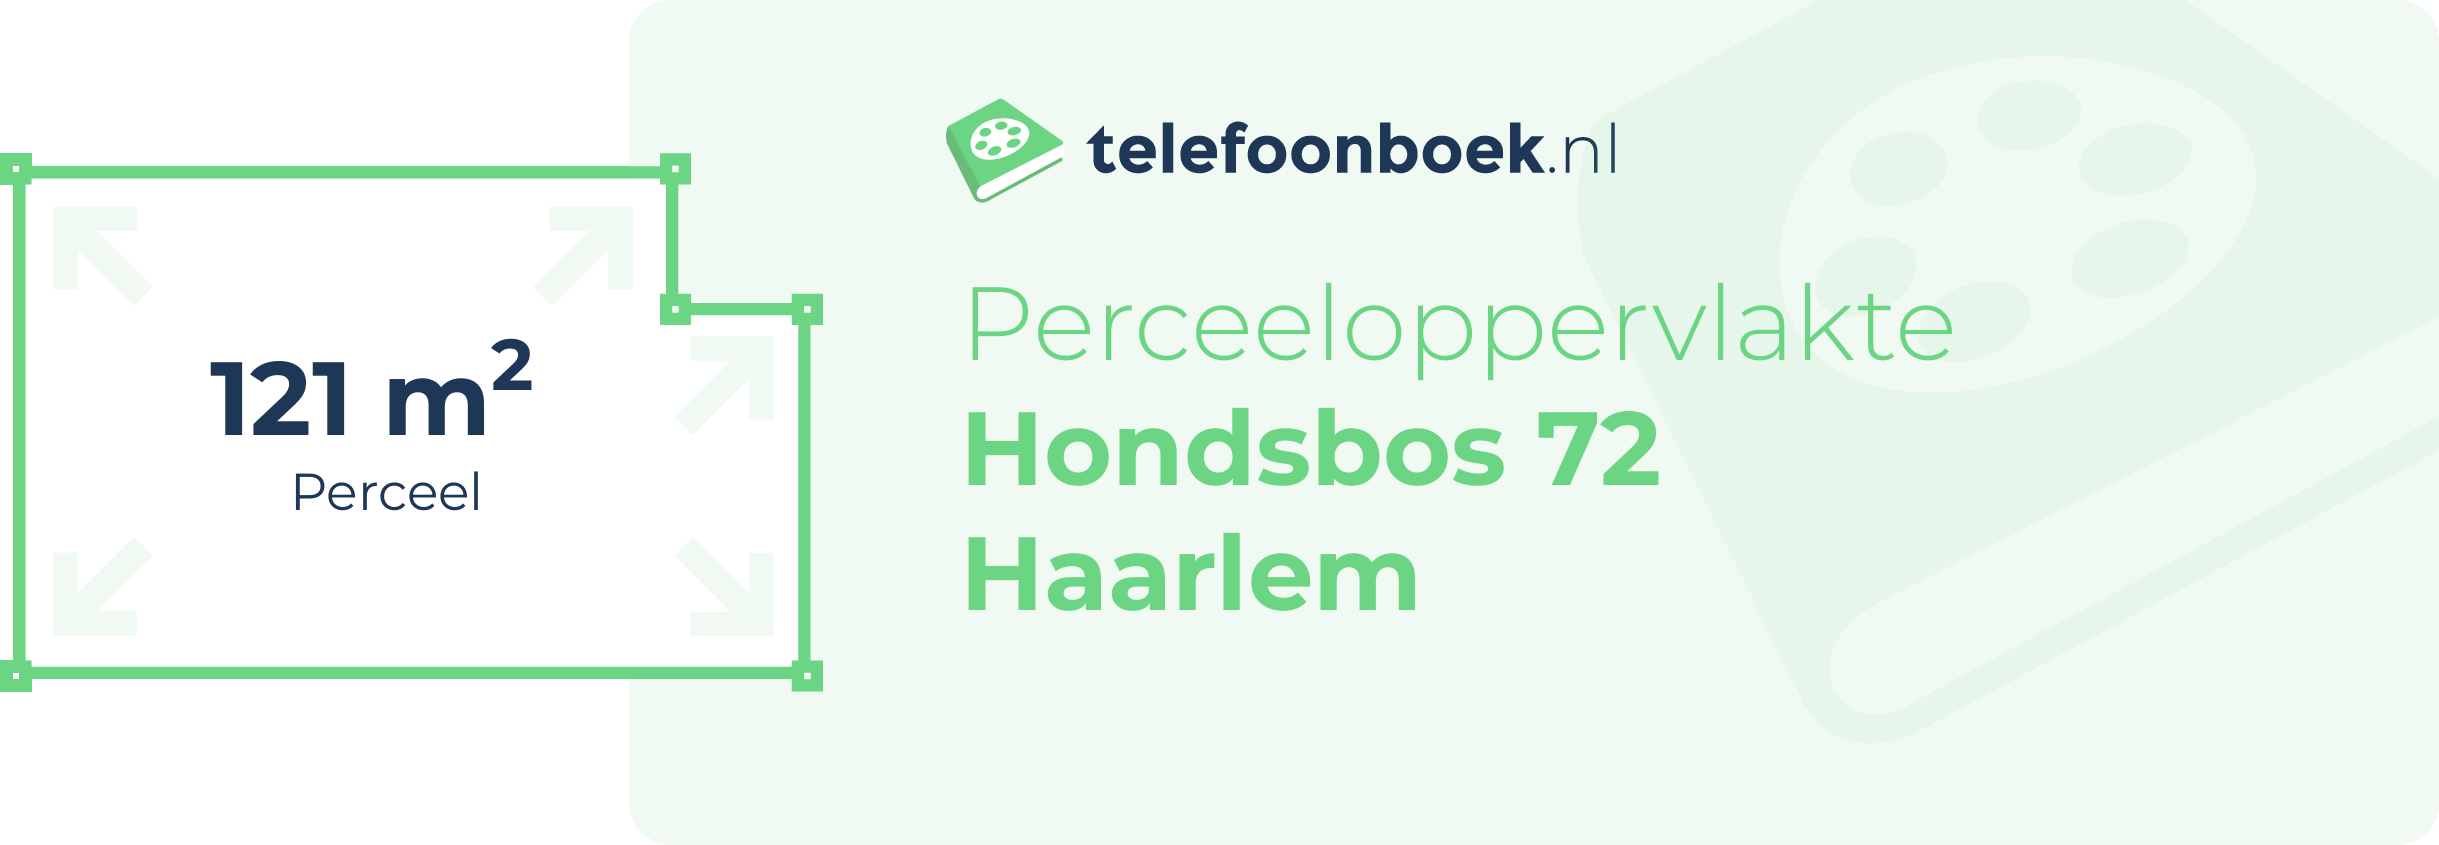 Perceeloppervlakte Hondsbos 72 Haarlem